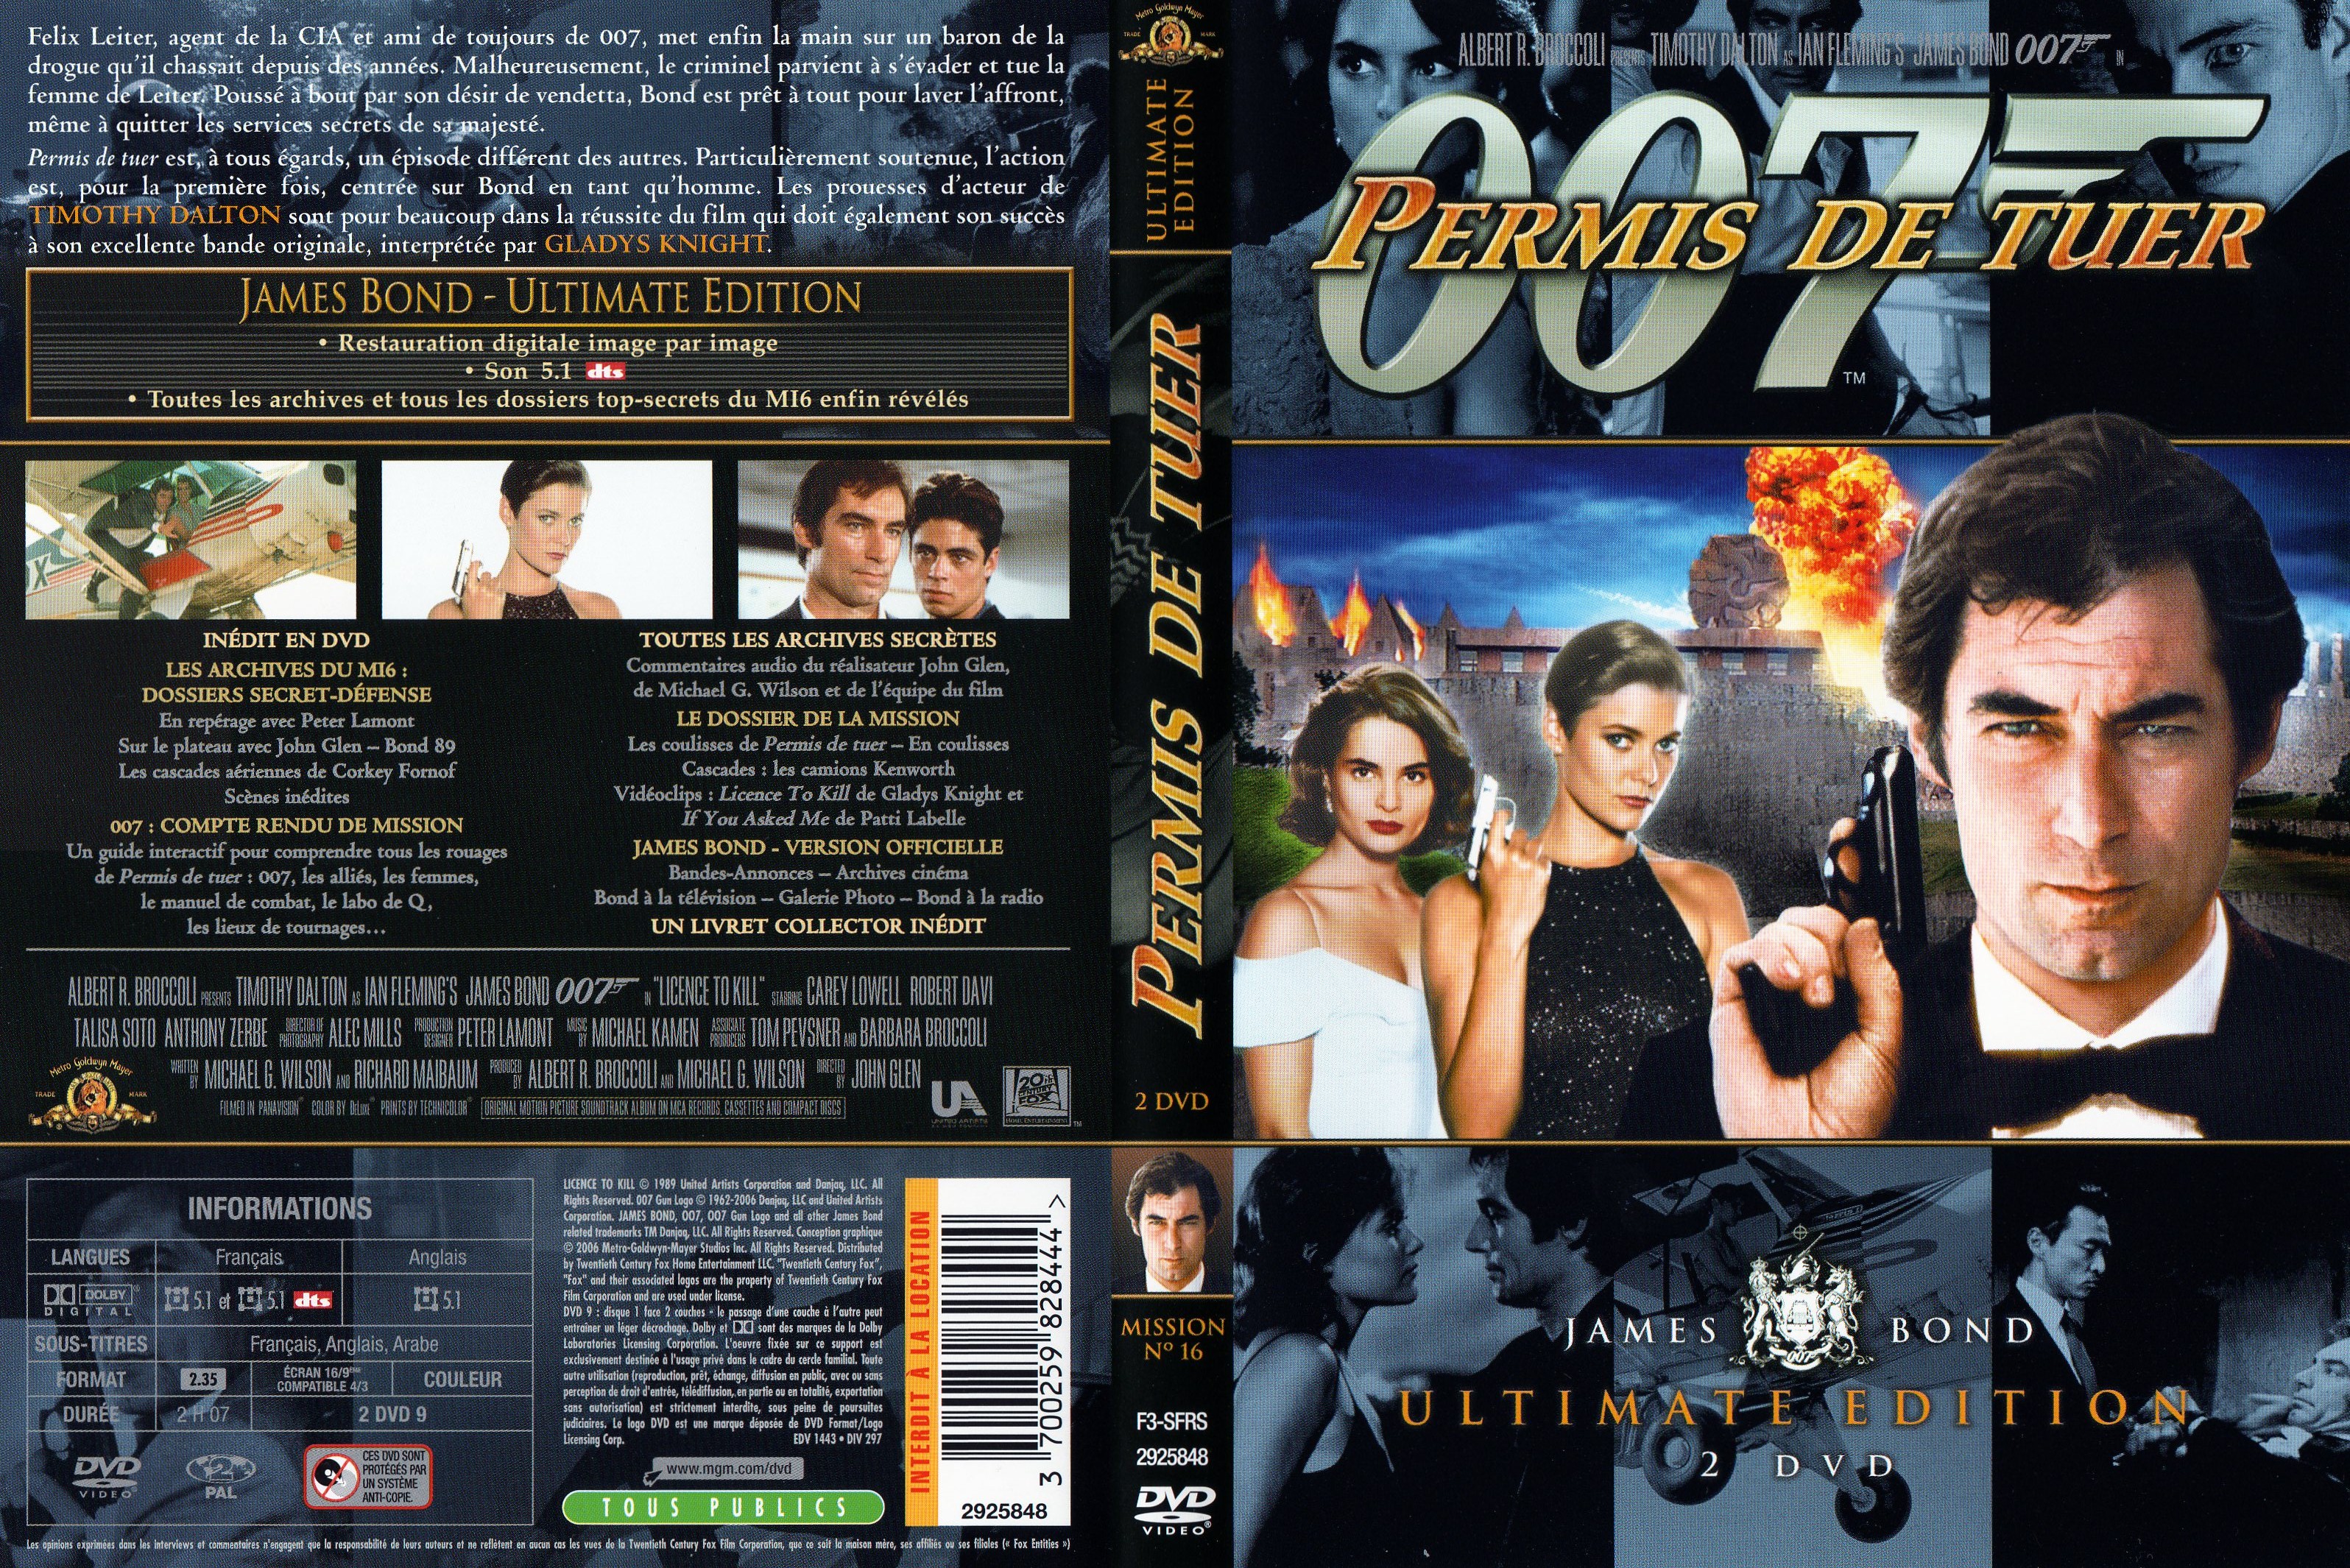 Jaquette DVD James Bond 007 Permis de tuer Ultimate Edition